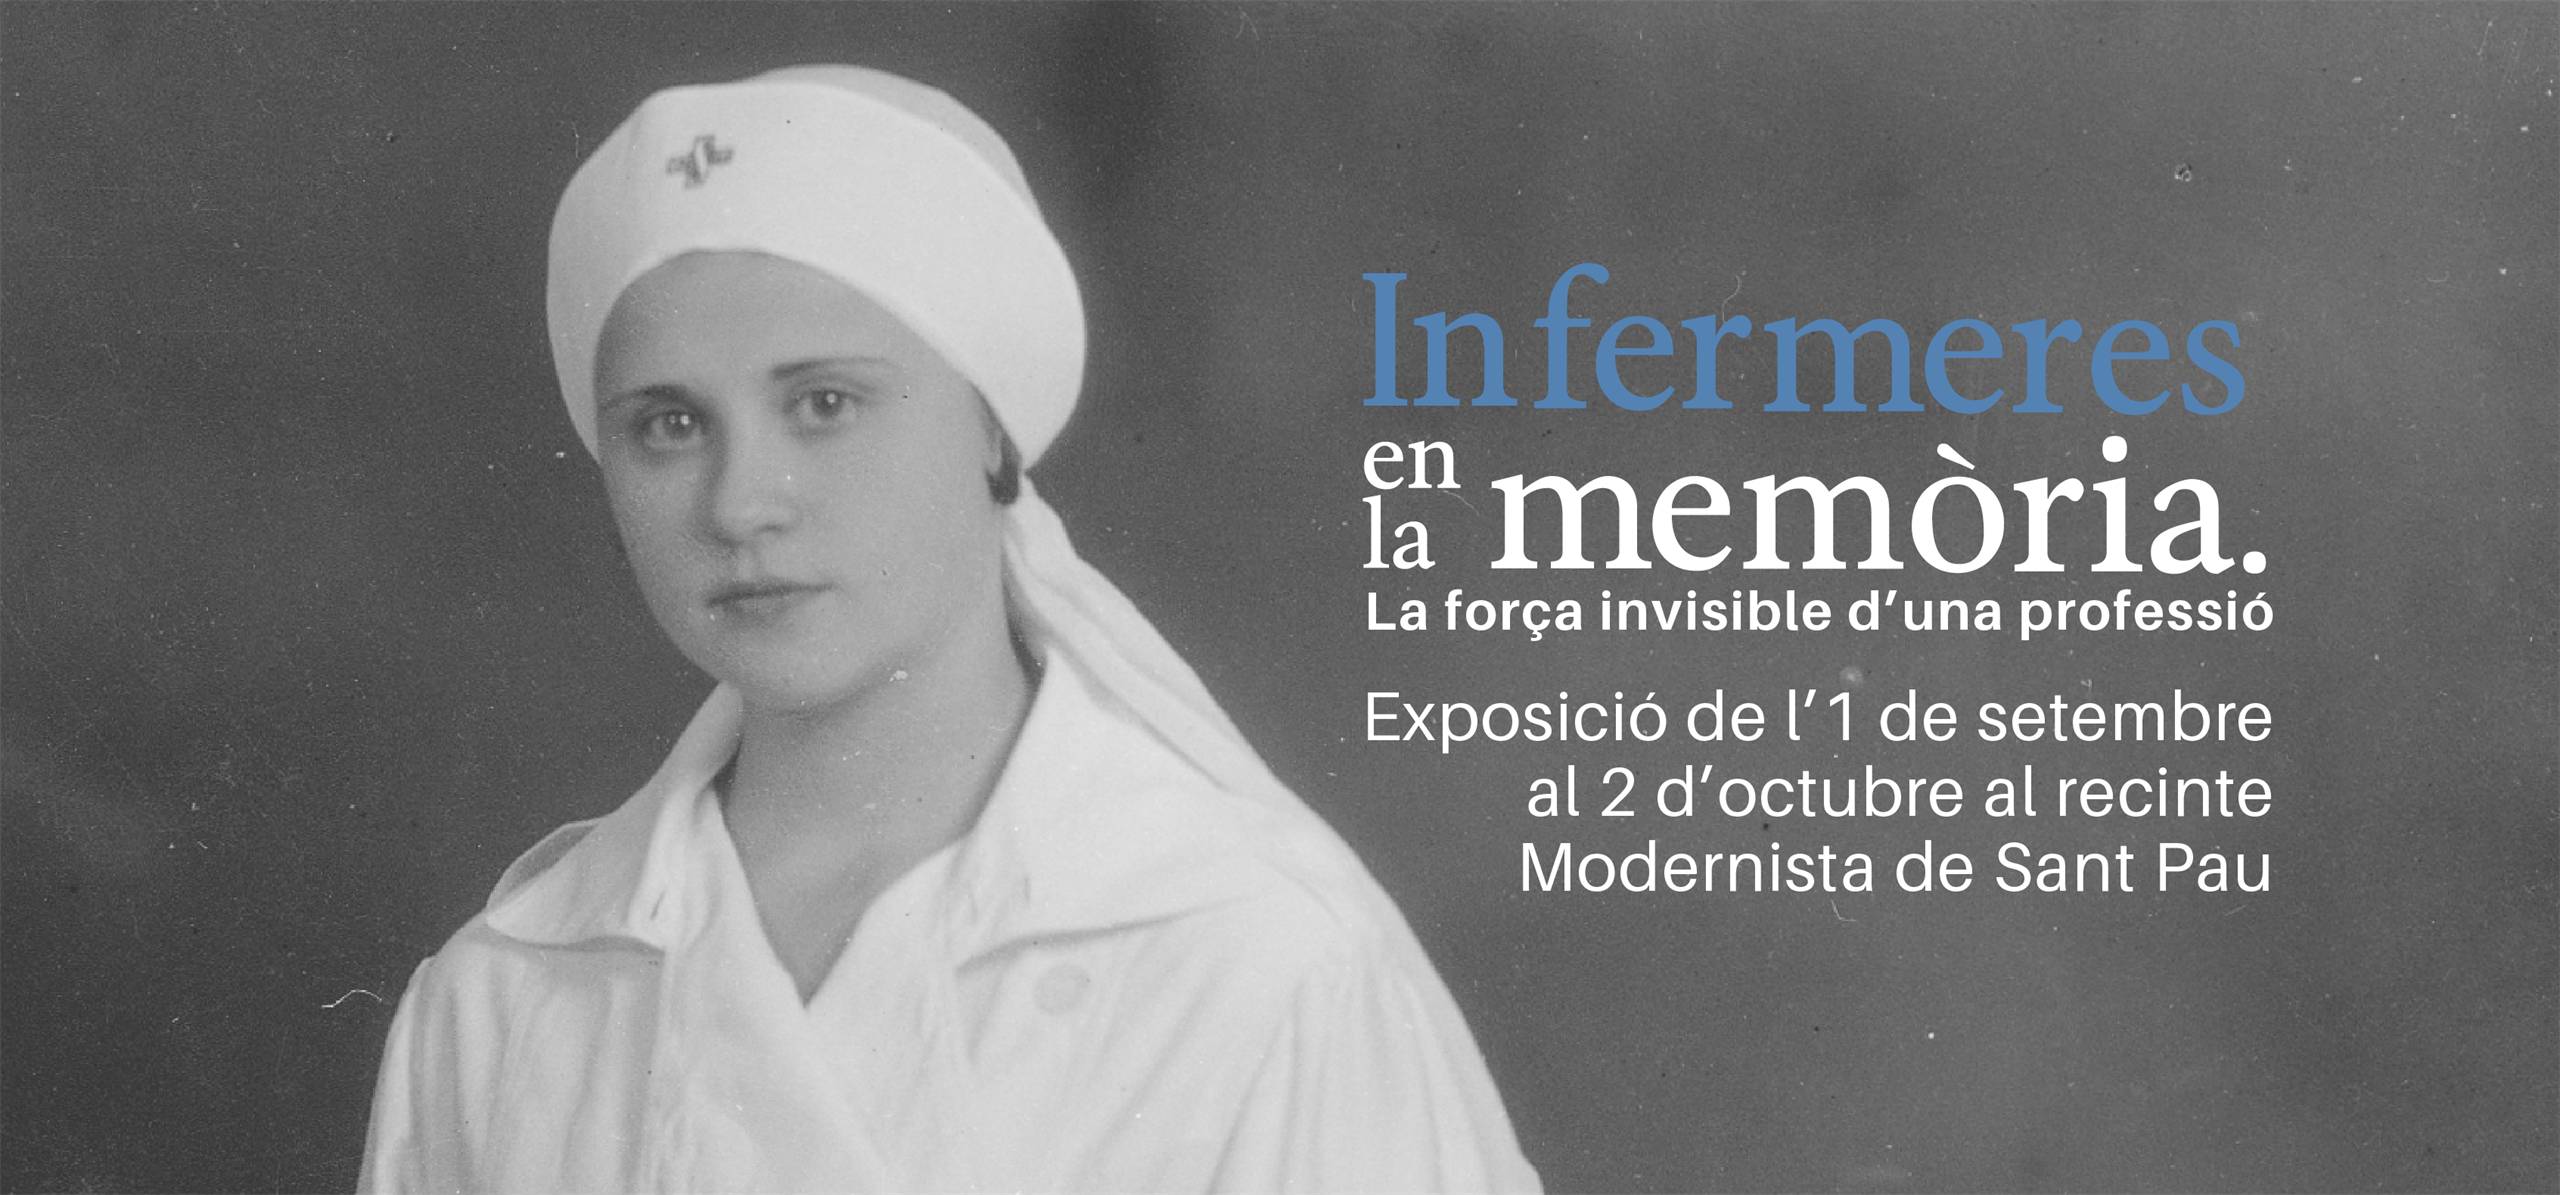 L’exposició sobre el paper de les infermeres al llarg de la història arriba al Recinte Modernista de Sant Pau